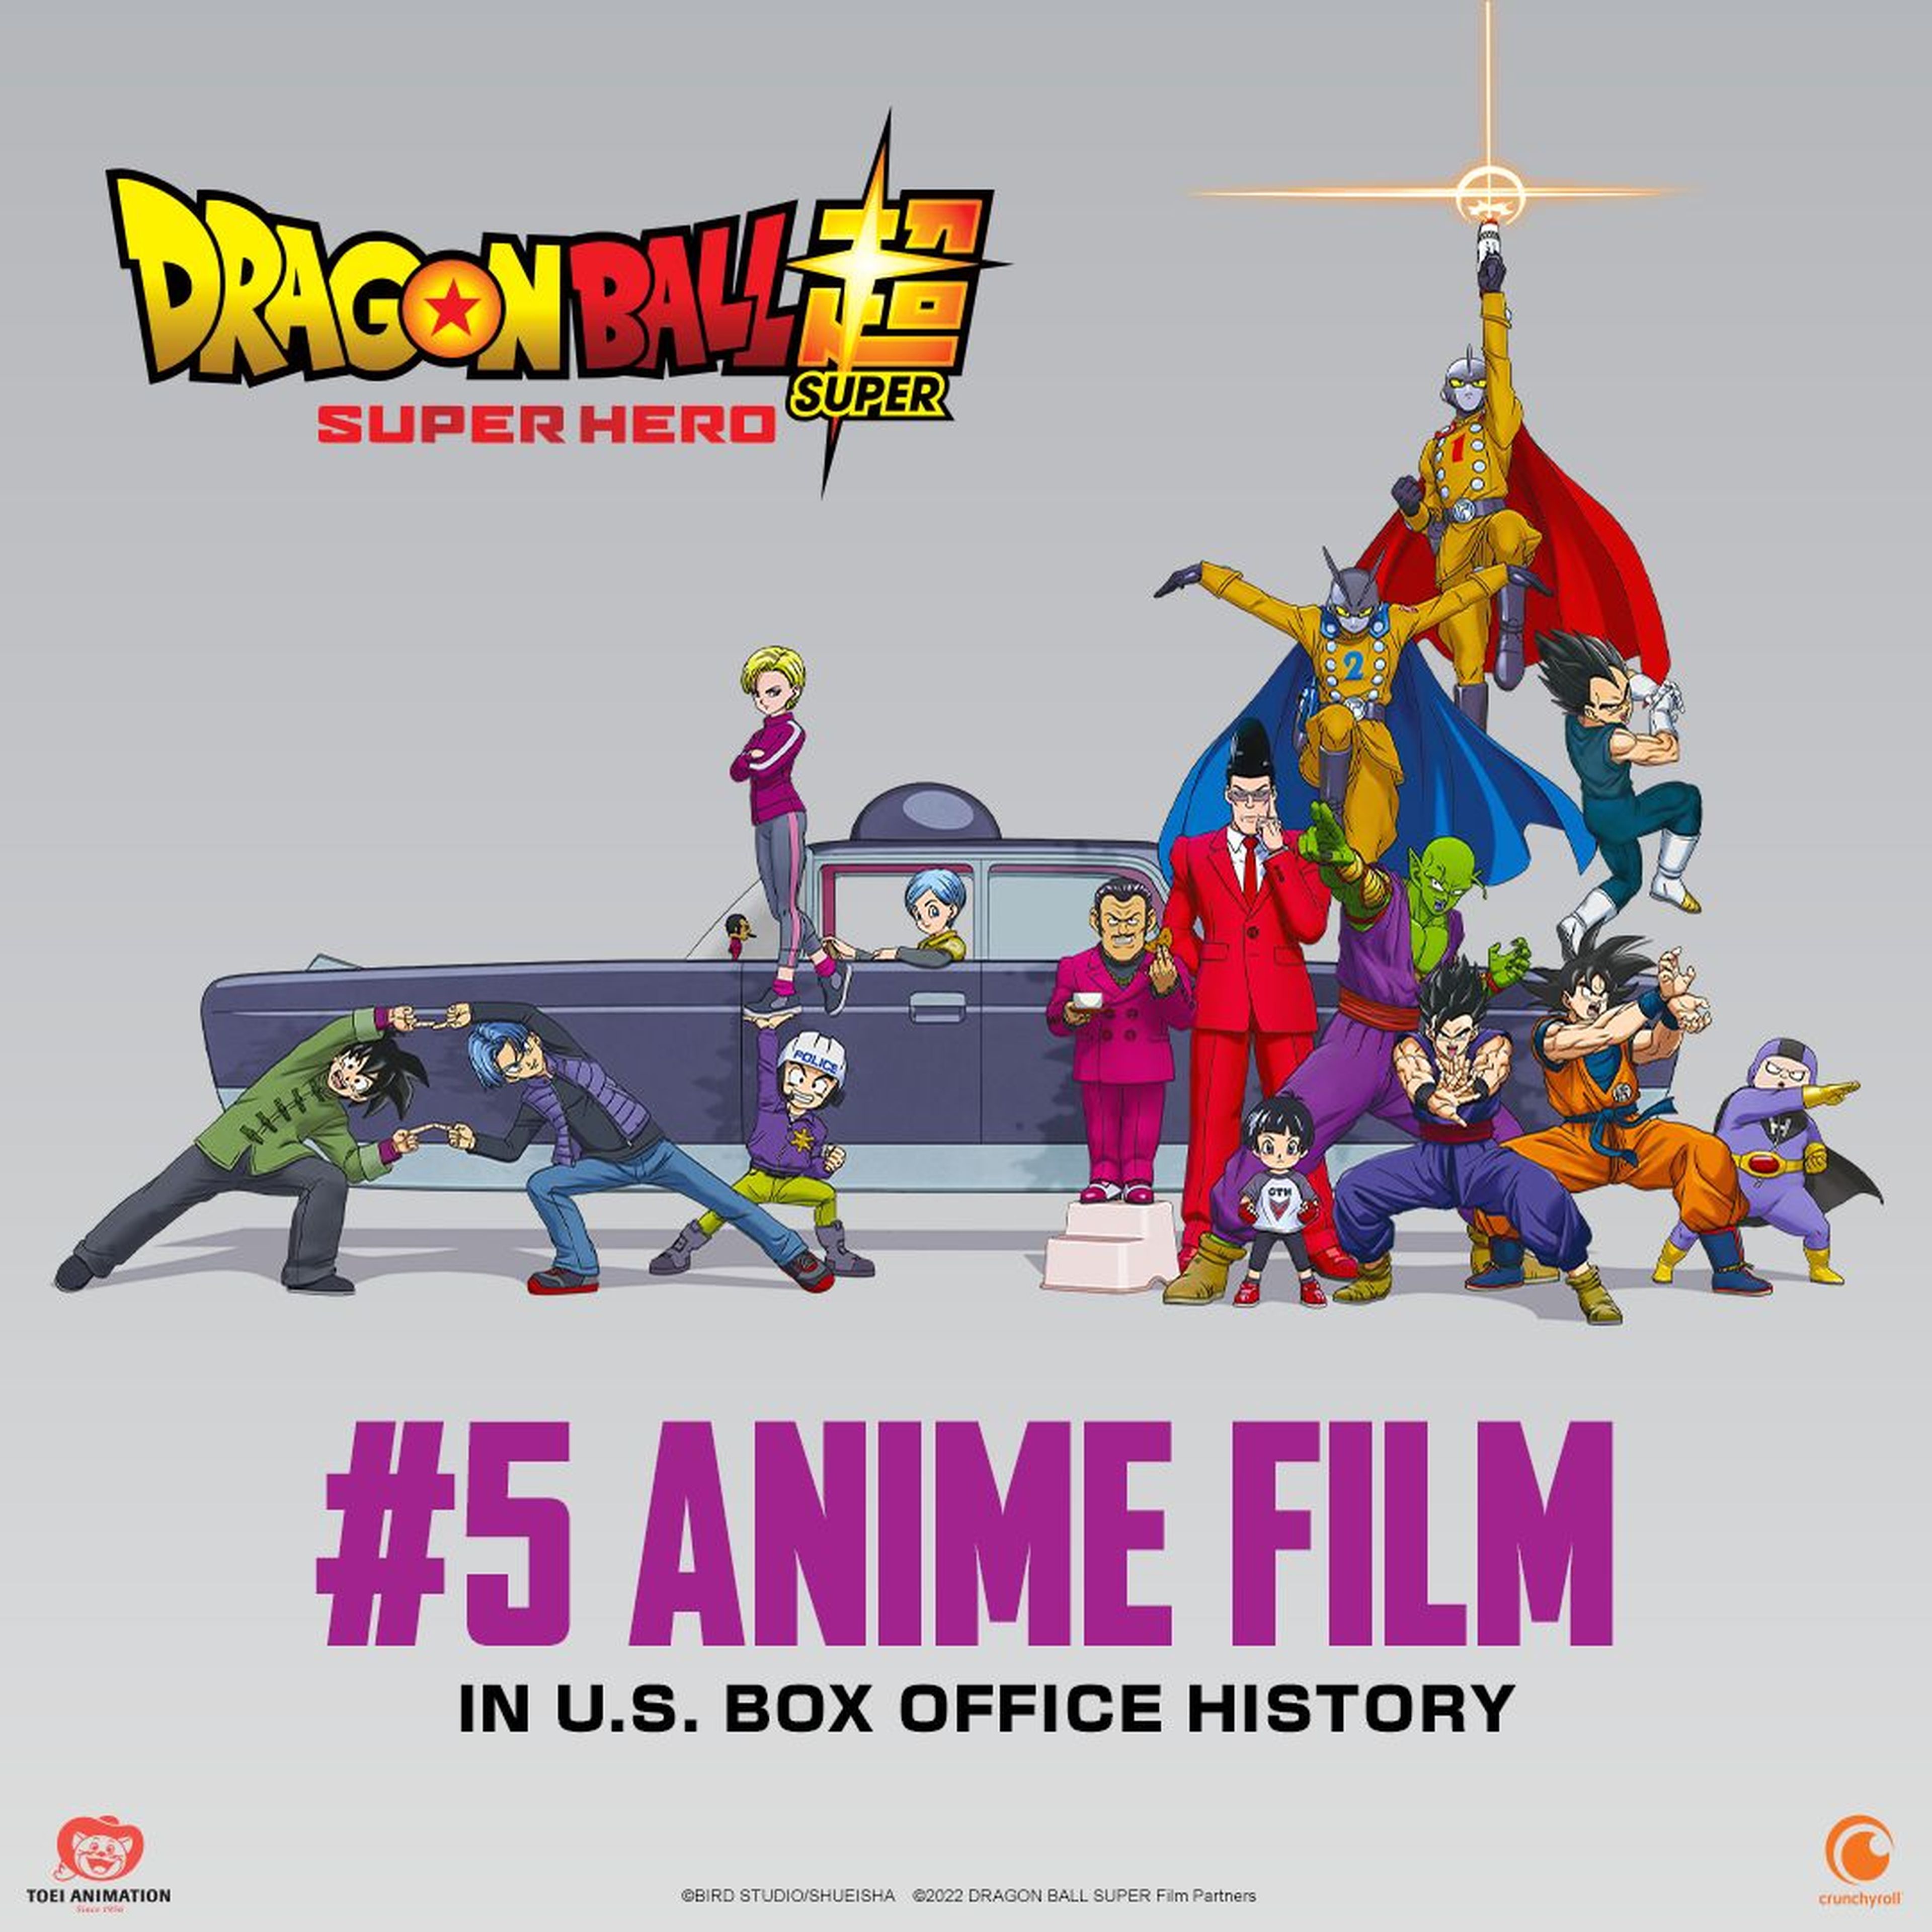 Dragon Ball Super: Super Hero - La nueva cinta de Akira Toriyama arrasa y se convierte en la quinta película anime más taquillera de Estados Unidos